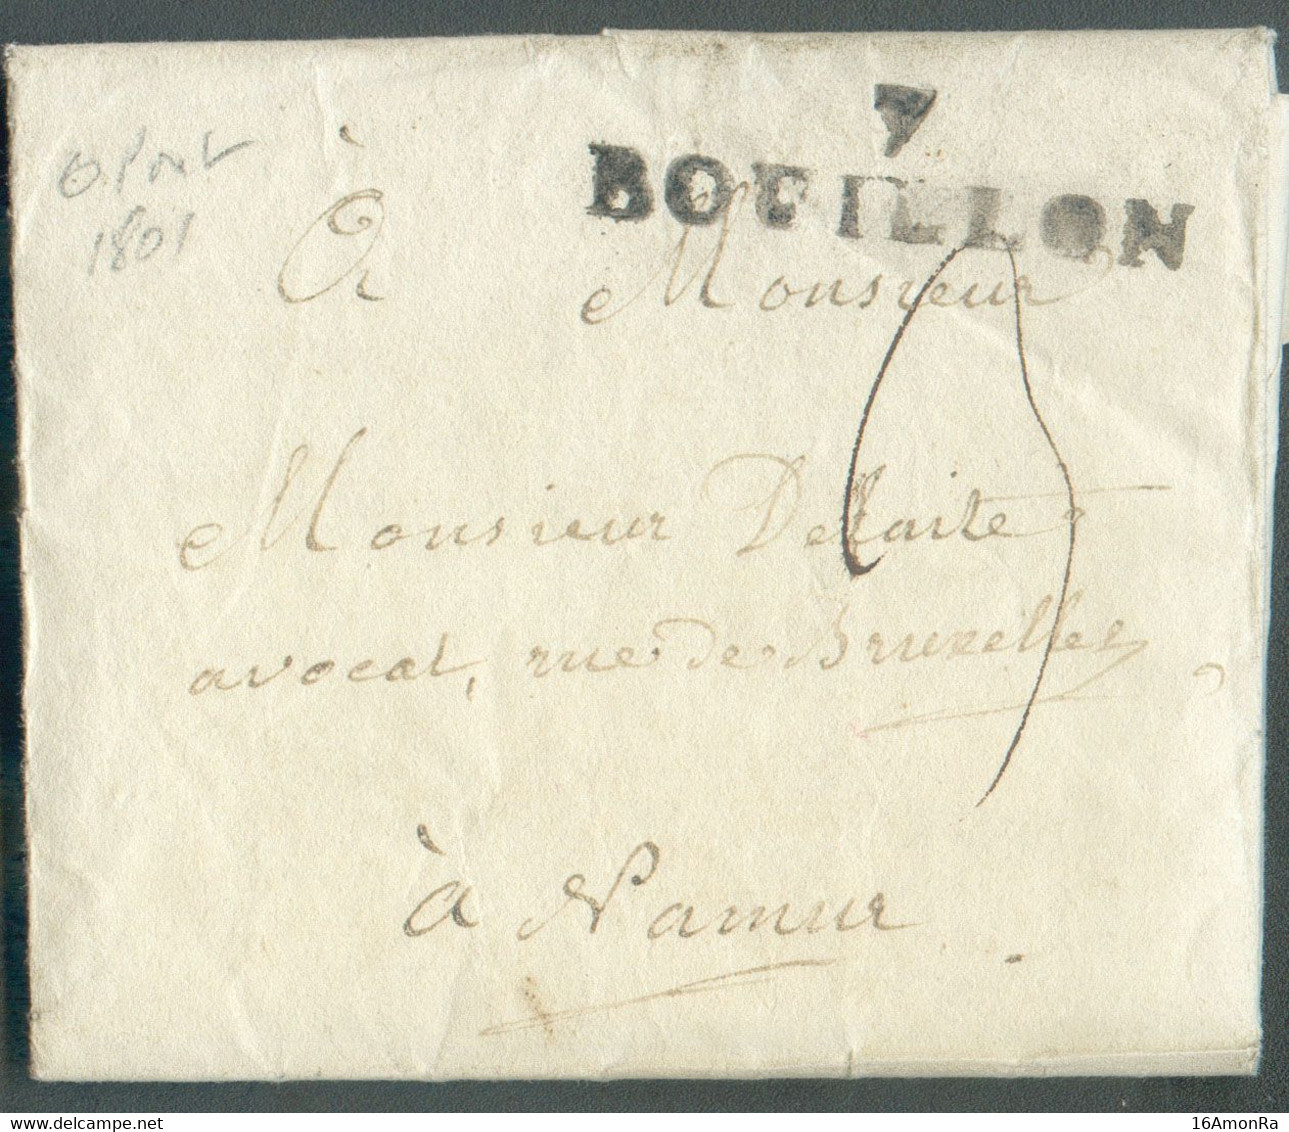 LAC Datée De (les) HAYONS, Via Griffe  7 BOUILLON (province De Luxembourg) Le 21 Septembre 1801 Vers Namur. H.7. Splendi - 1794-1814 (French Period)